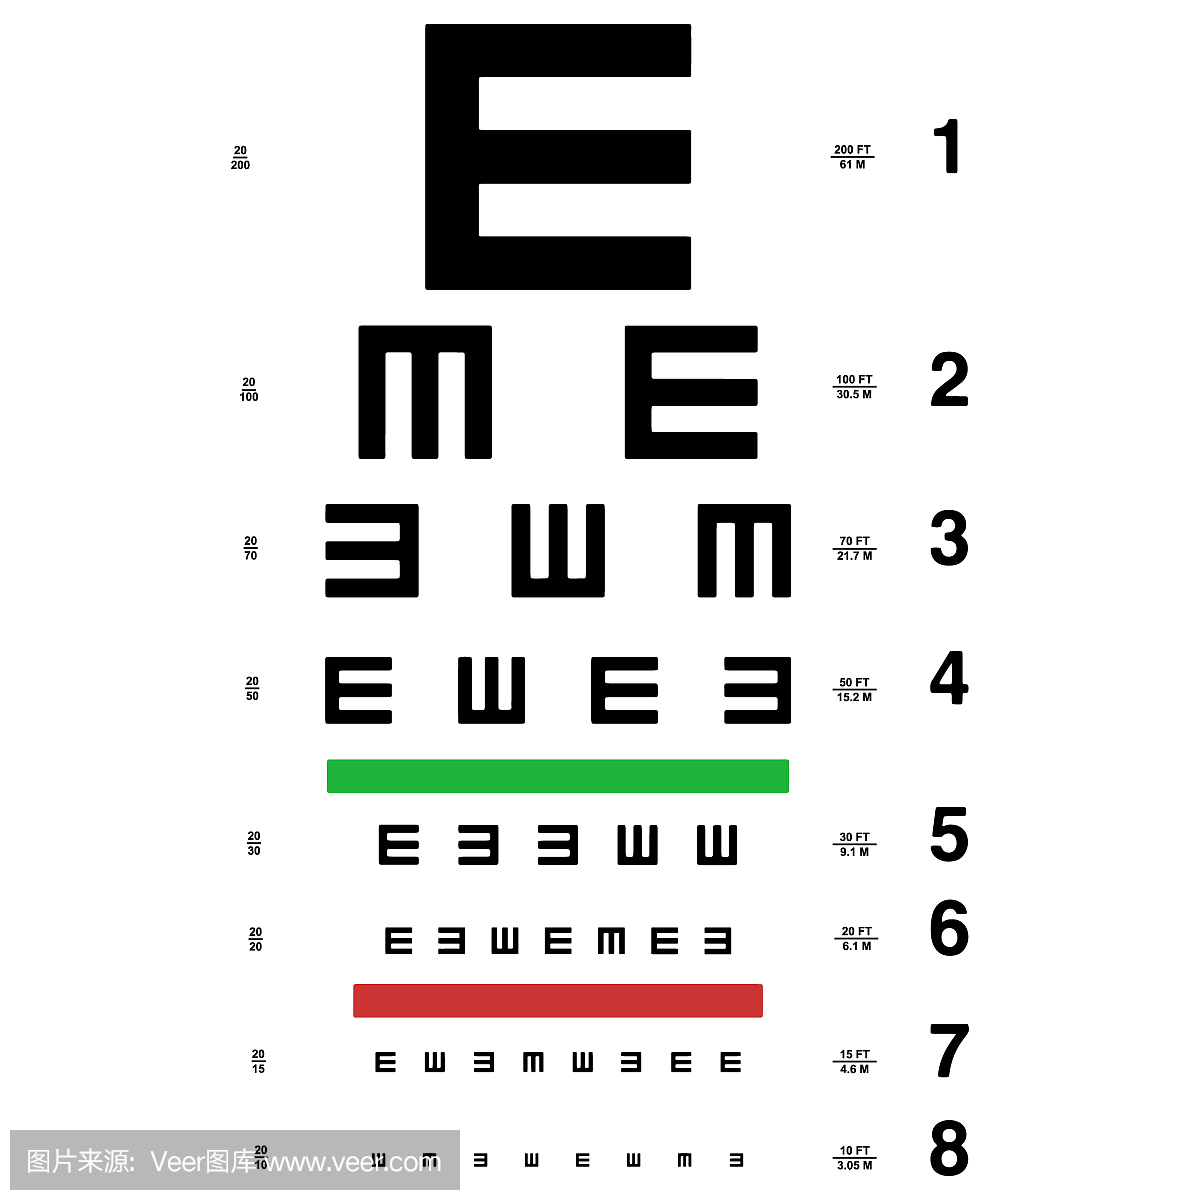 新视力眼睛近视测试视力表图片素材-编号14945444-图行天下